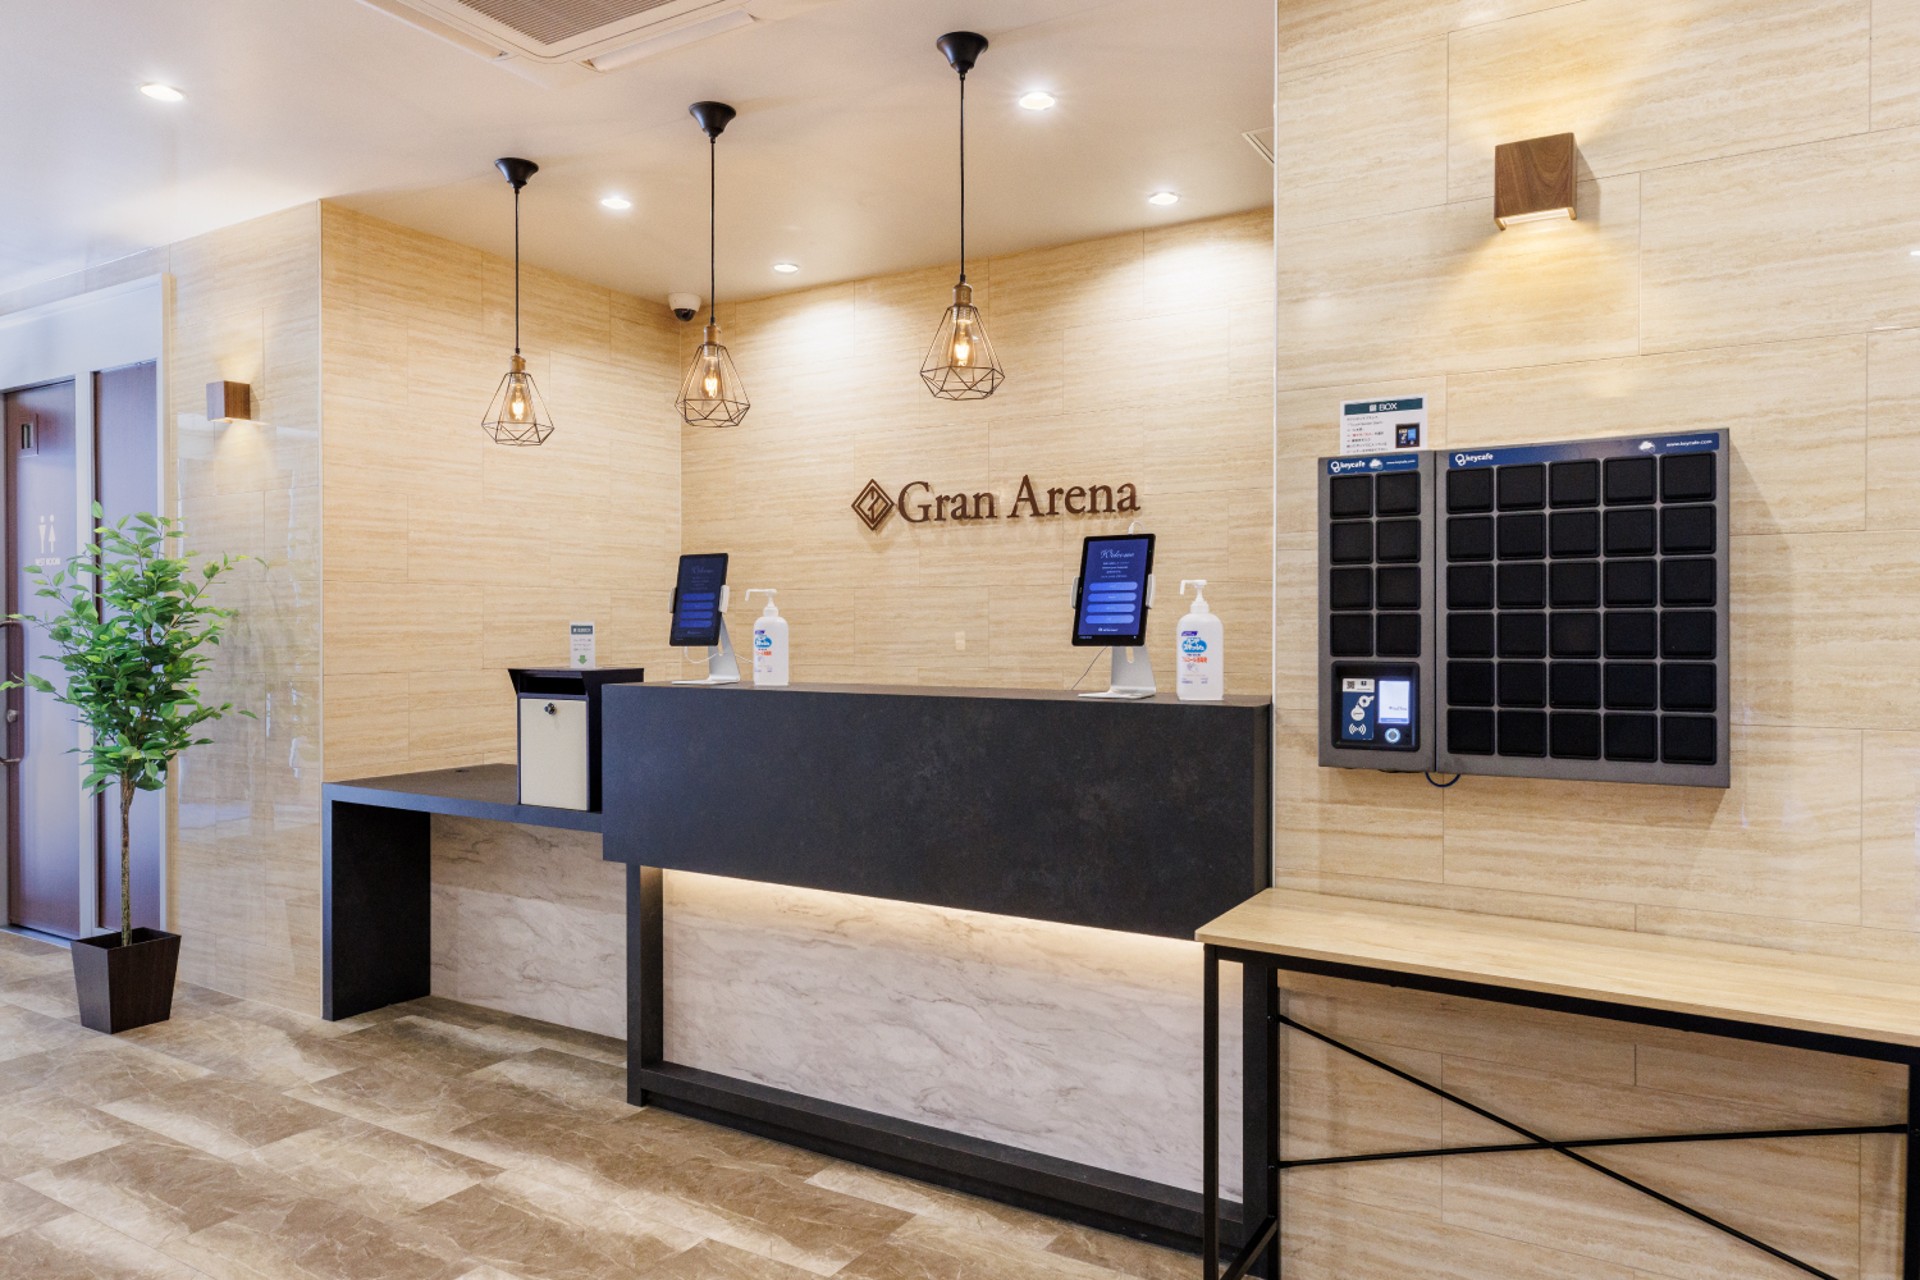 Hotel Gran Arena senkt Kosten und erhöht Gästezufriedenheit mit Keycafe